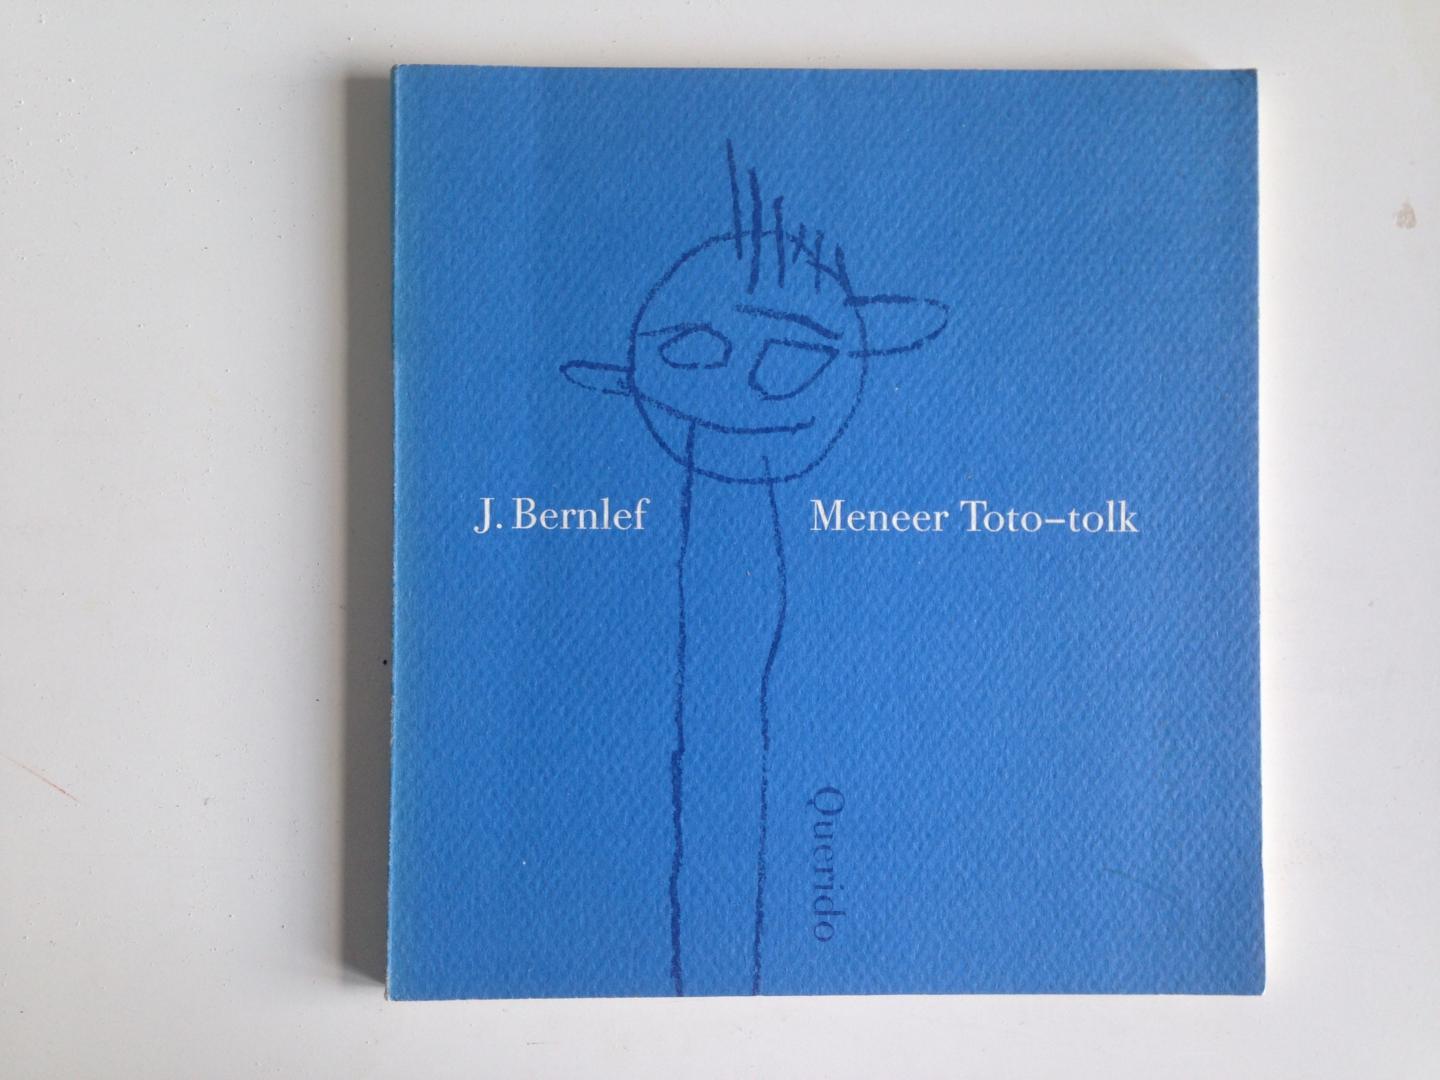 Bernlef, J. - Meneer Toto-tolk (gesigneerd)